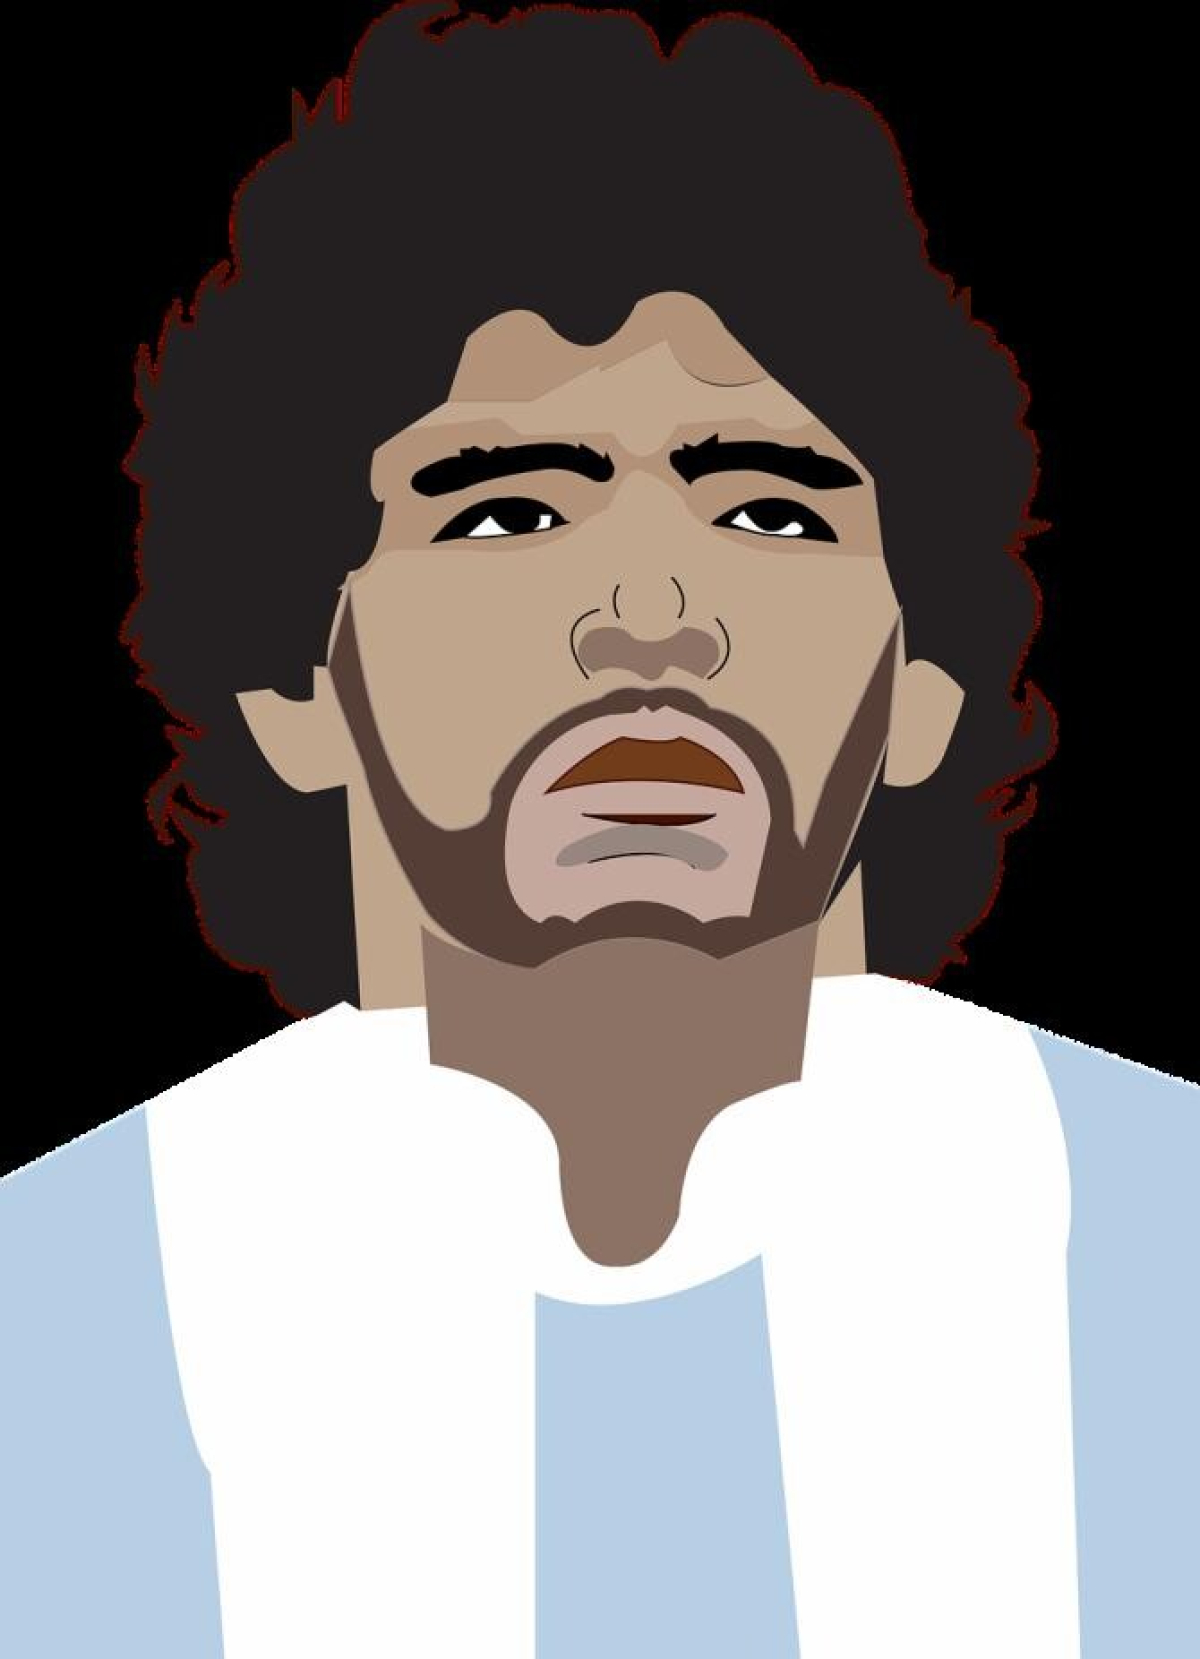 Diego Maradona, transfer într-un mausoleu din centrul Buenos Aires. Familie: Toți argentinienii și cetățenii lumii să poată aduce un omagiu